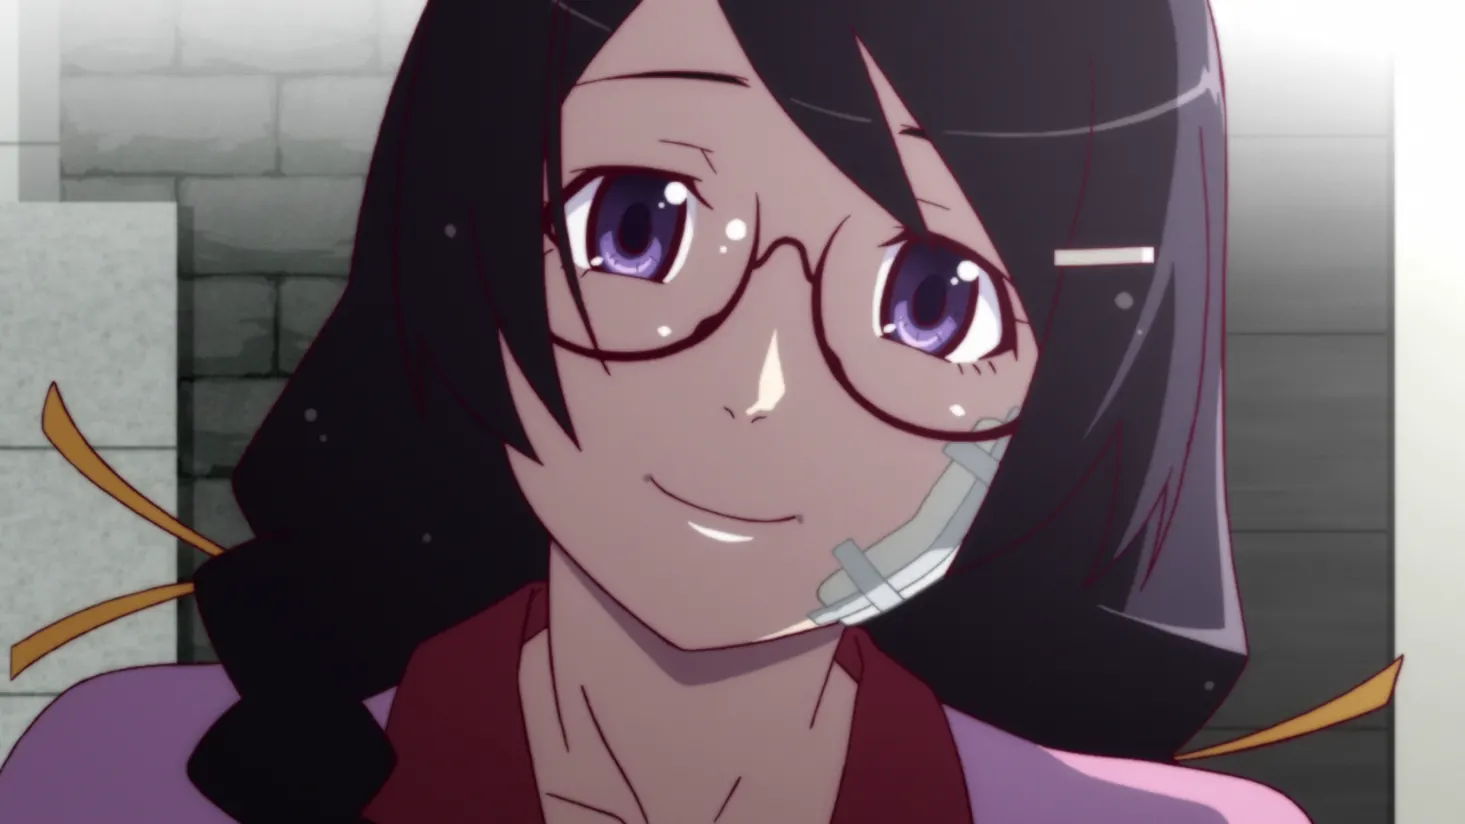 Tsubasa’s perpetual smile always seems a little sad to me